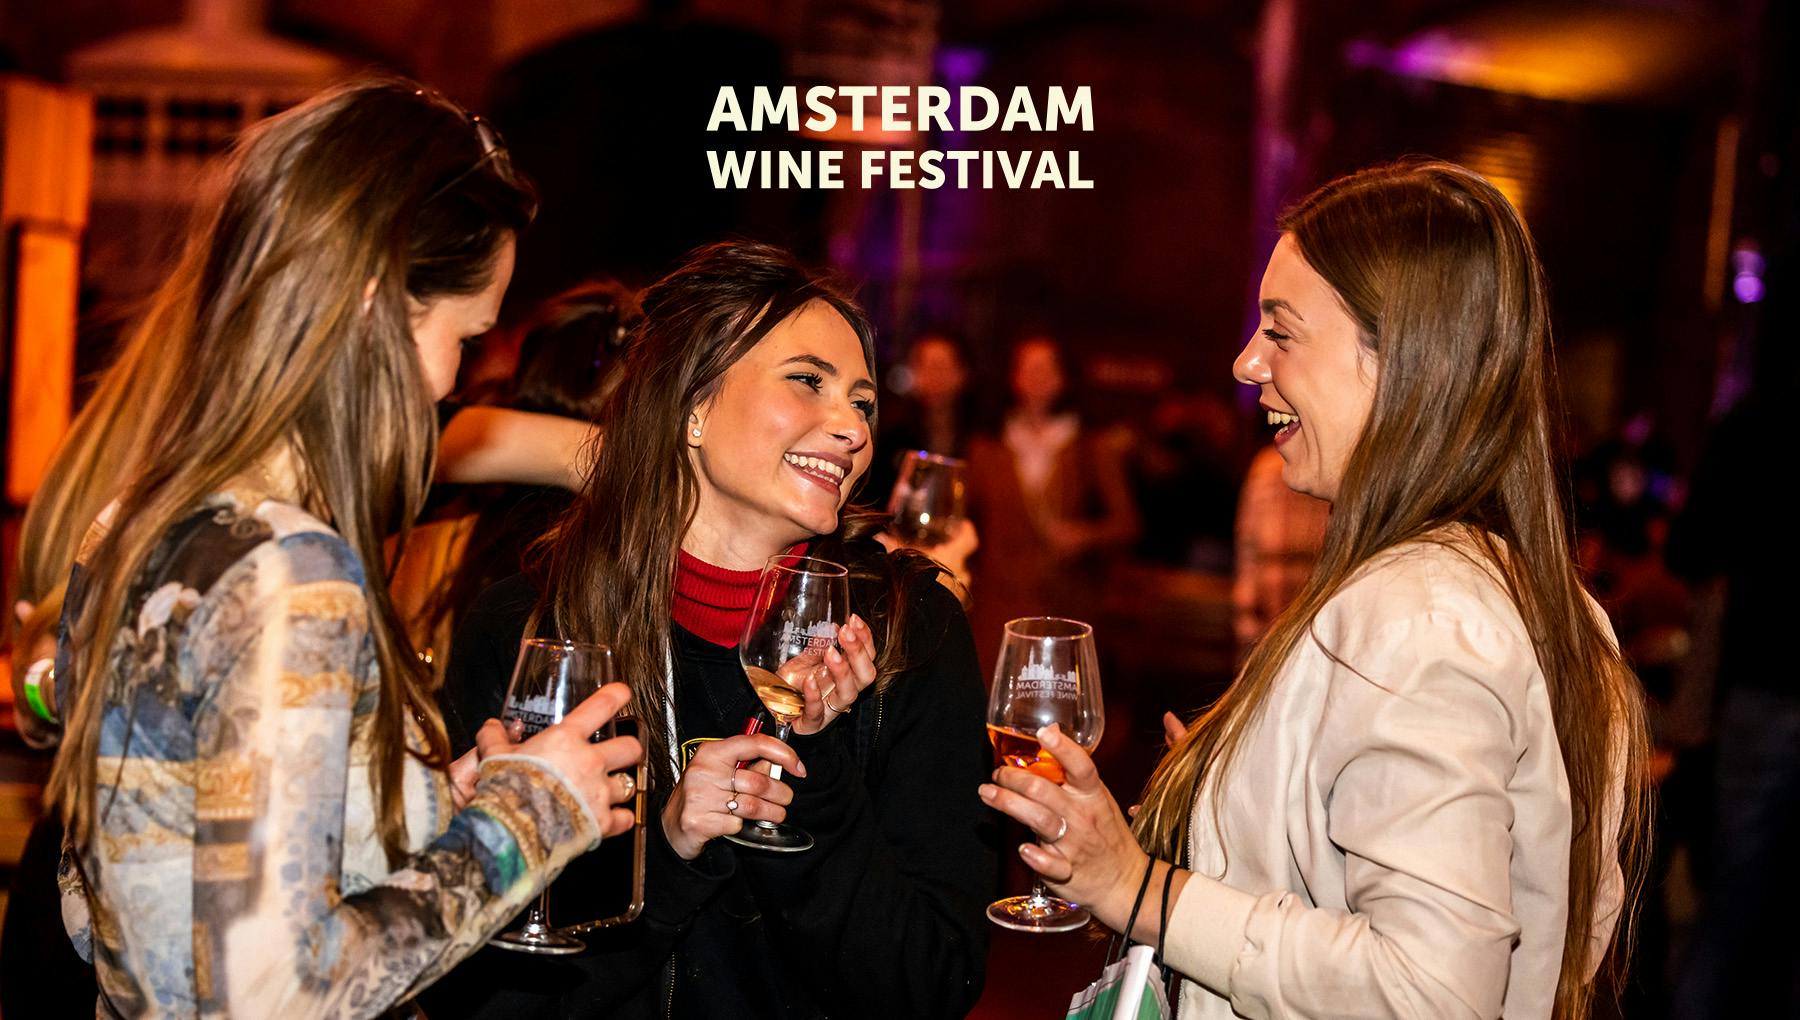 Amsterdam Wine Festival - 28 september t/m 1 oktober op het Gashouderterrein.